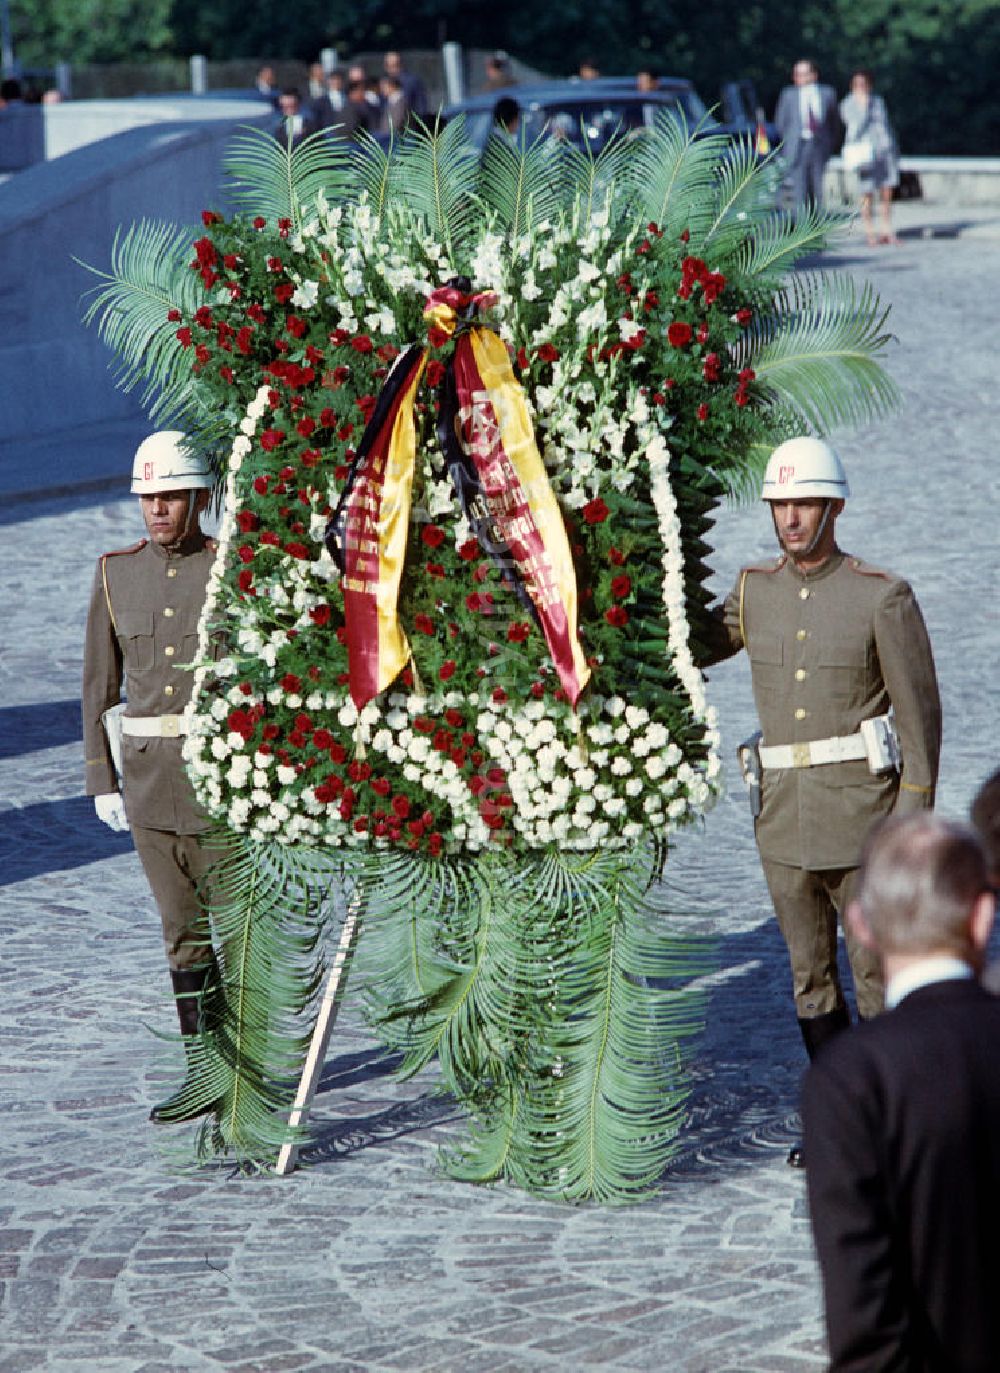 GDR image archive: Havanna - Kranzniederlegung des Staats- und Parteivorsitzenden der DDR, Erich Honecker, auf dem Plaza de la Revolución (Platz der Revolution) mit dem José-Martí-Denkmal in Havanna. Honecker stattete vom 2